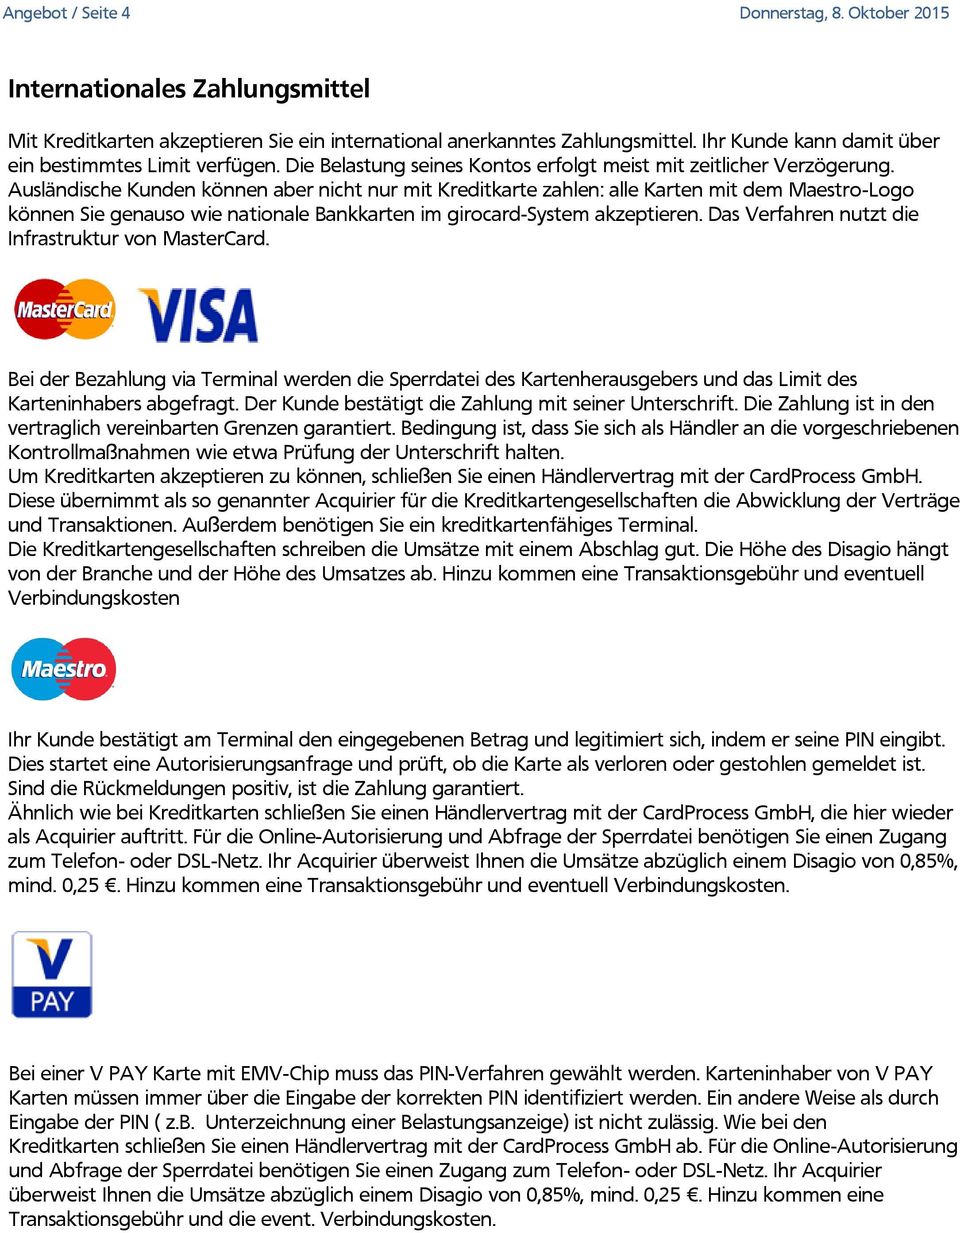 Ausländische Kunden können aber nicht nur mit Kreditkarte zahlen: alle Karten mit dem Maestro-Logo können Sie genauso wie nationale Bankkarten im girocard-system akzeptieren.